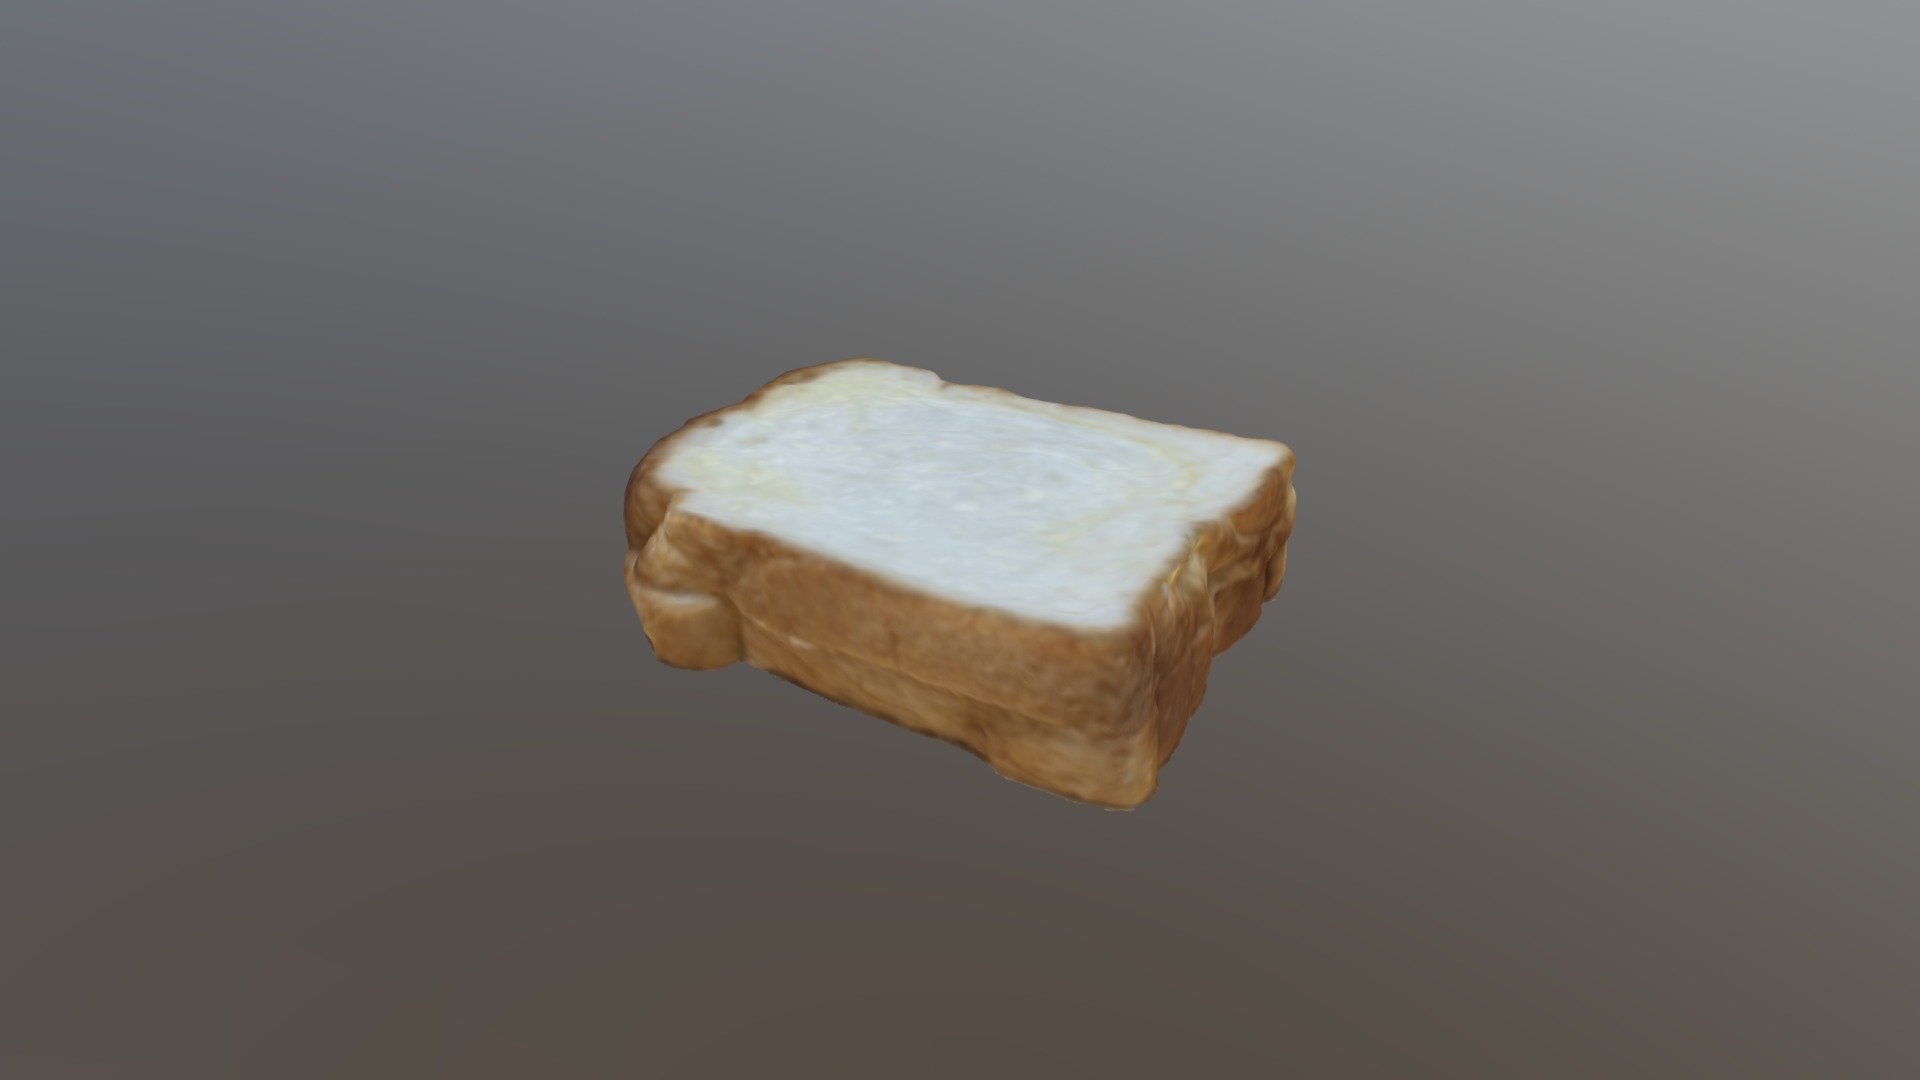 A Plain Bread_3D Model